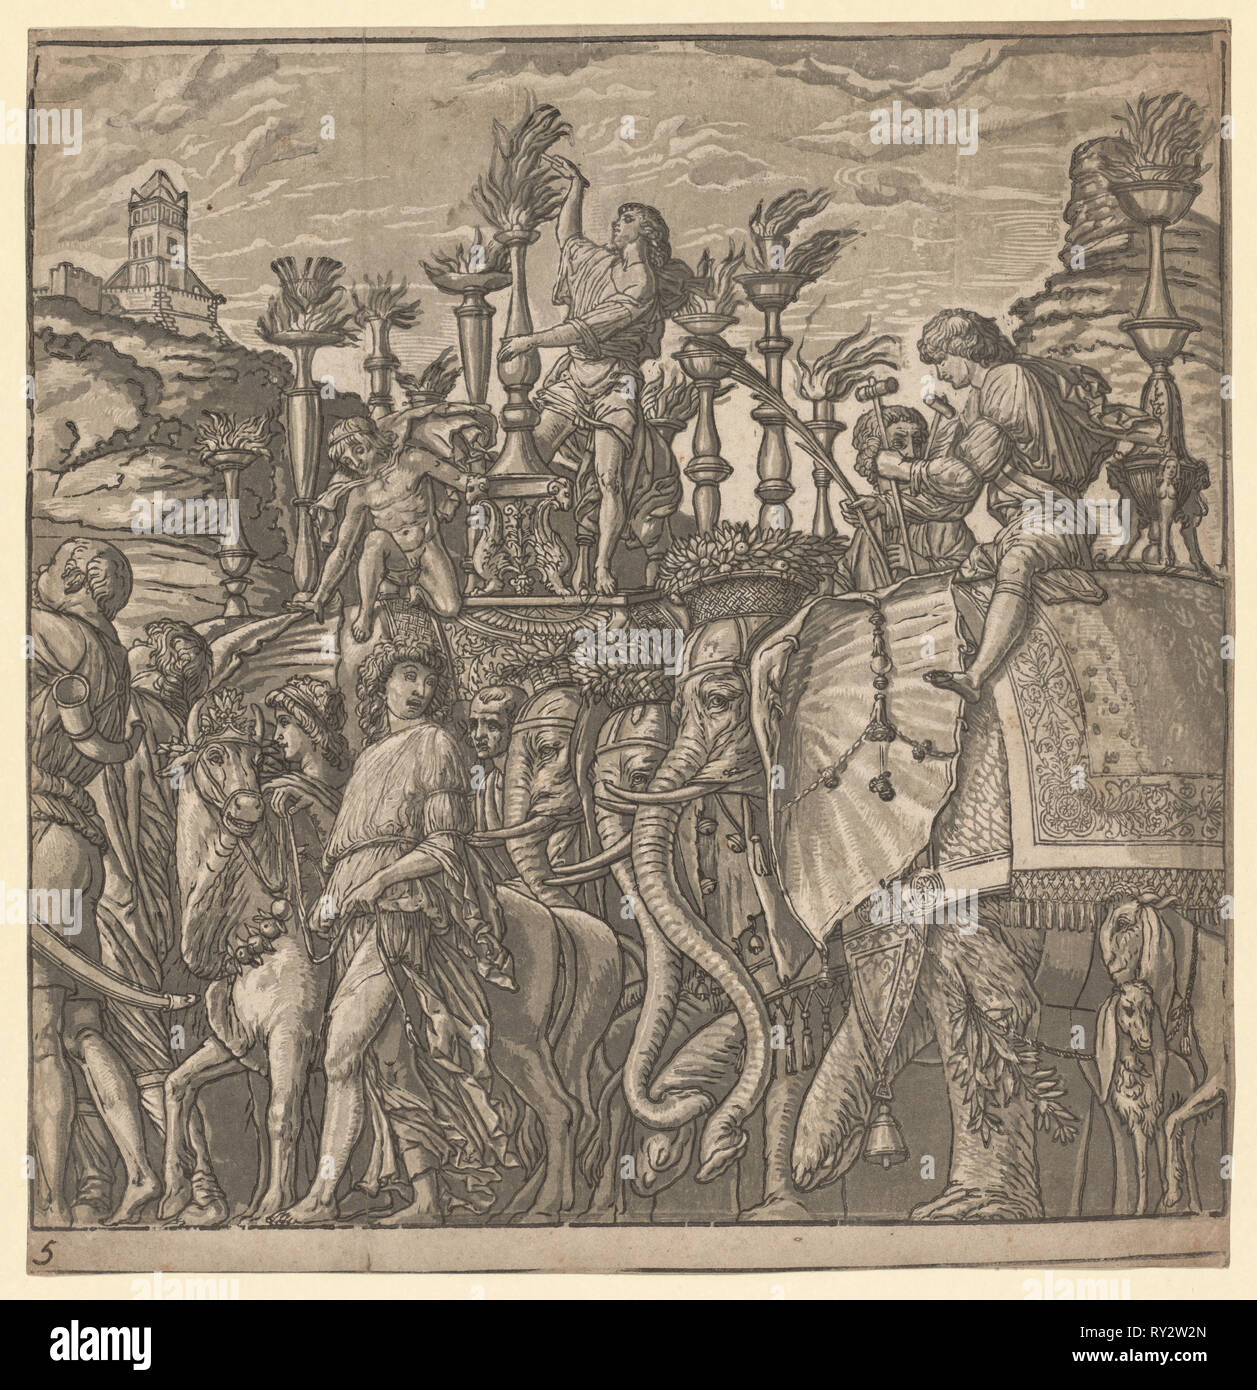 Le Triomphe de Jules César : Les éléphants portant Torches, 1593-99. Andrea Andreani (italien, à propos de 1558-1610), après l'Italien, Andrea Mantegna (1431-1506). Gravure sur bois clair-obscur Banque D'Images